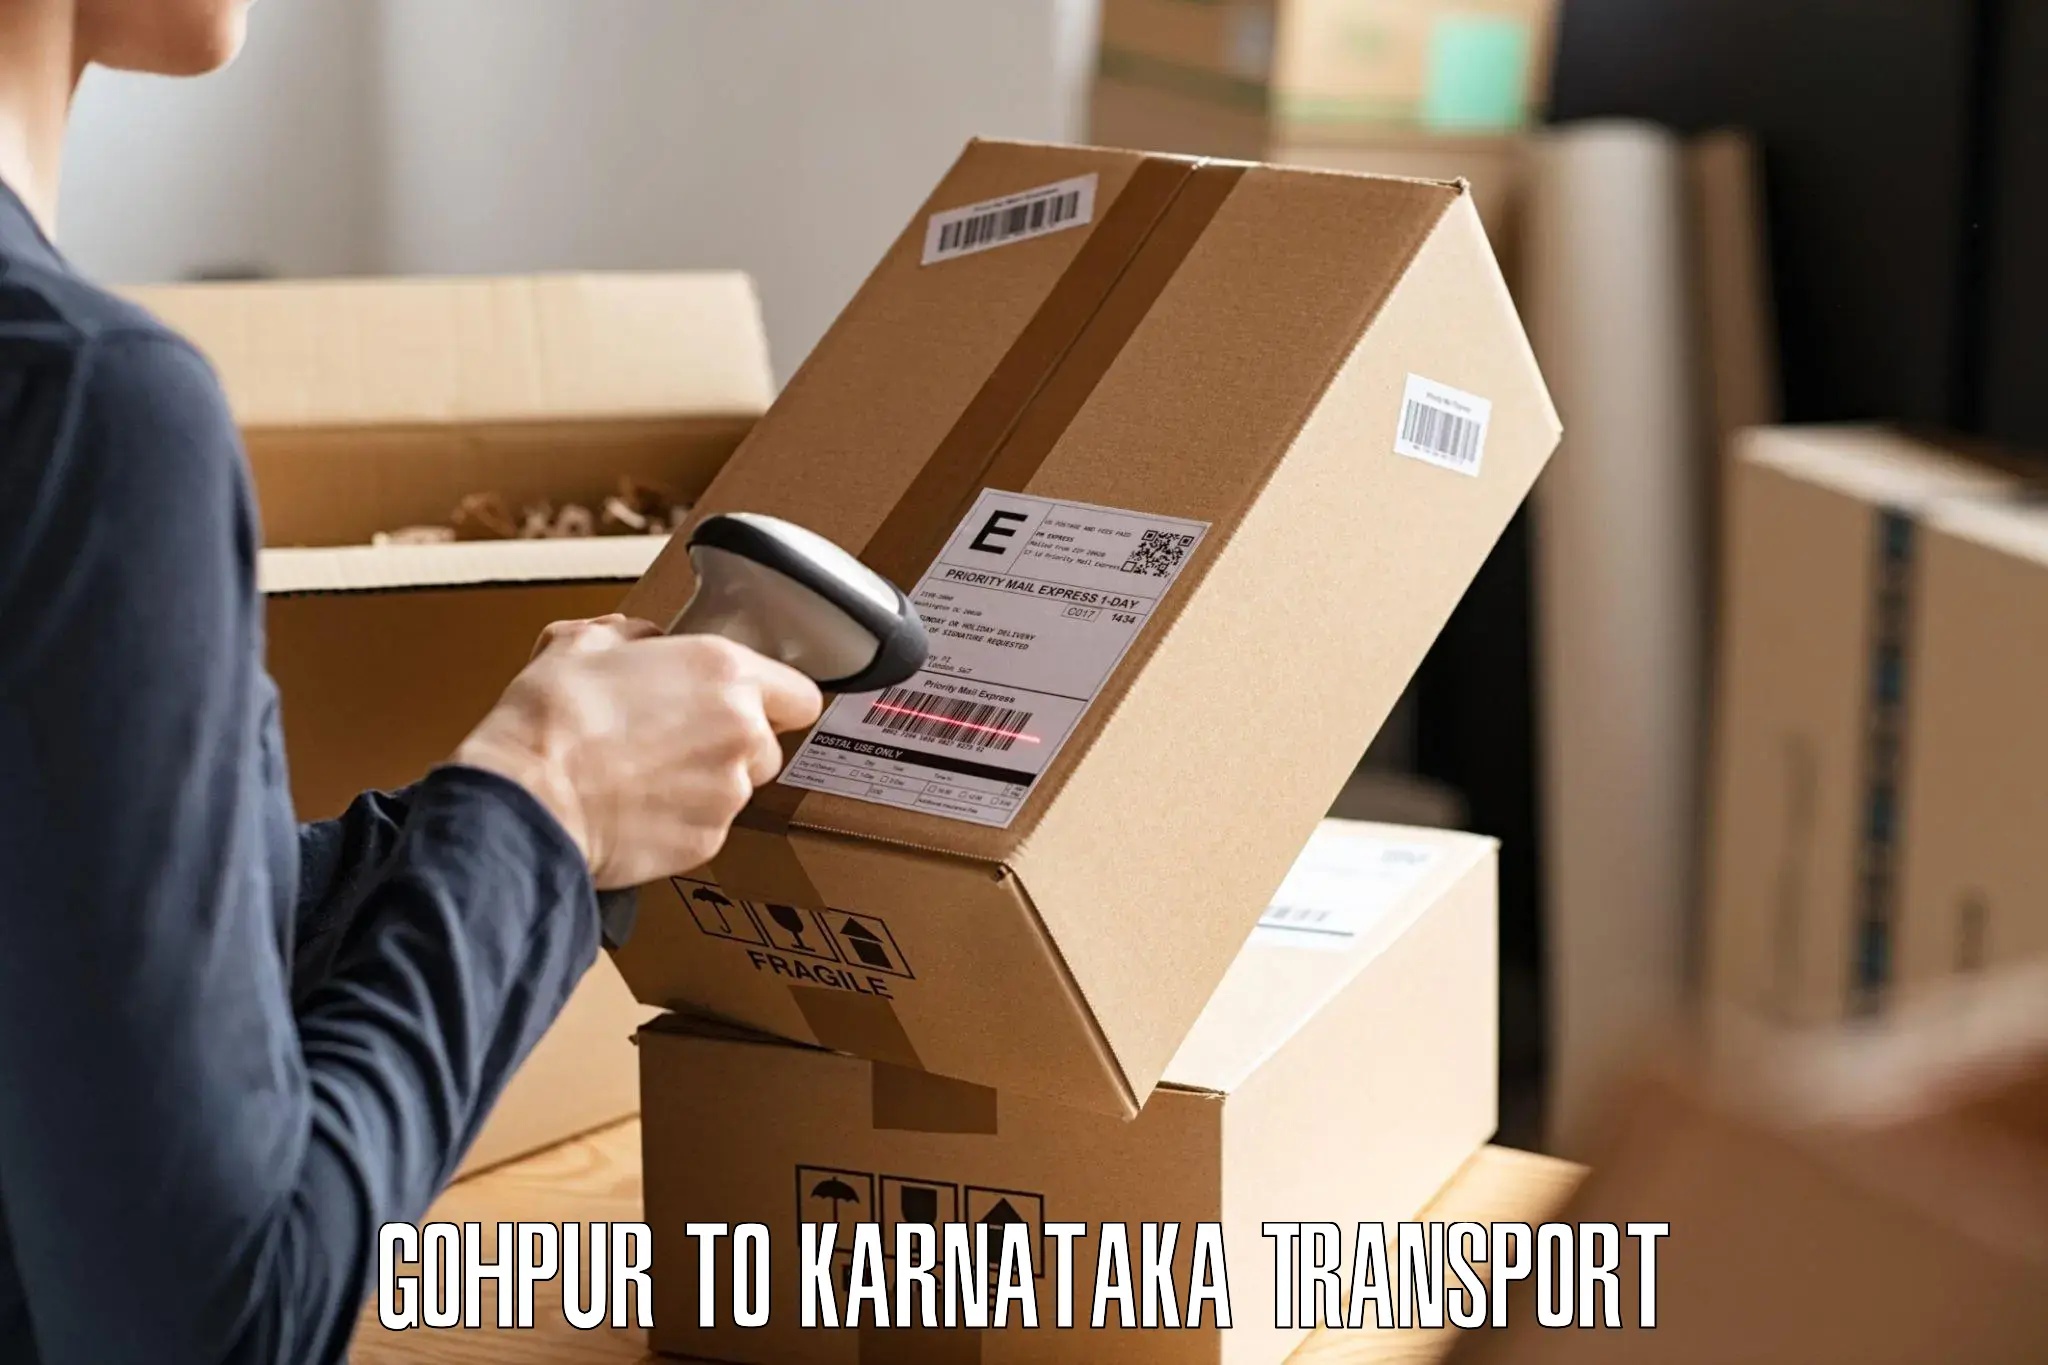 Road transport online services Gohpur to Ranebennur